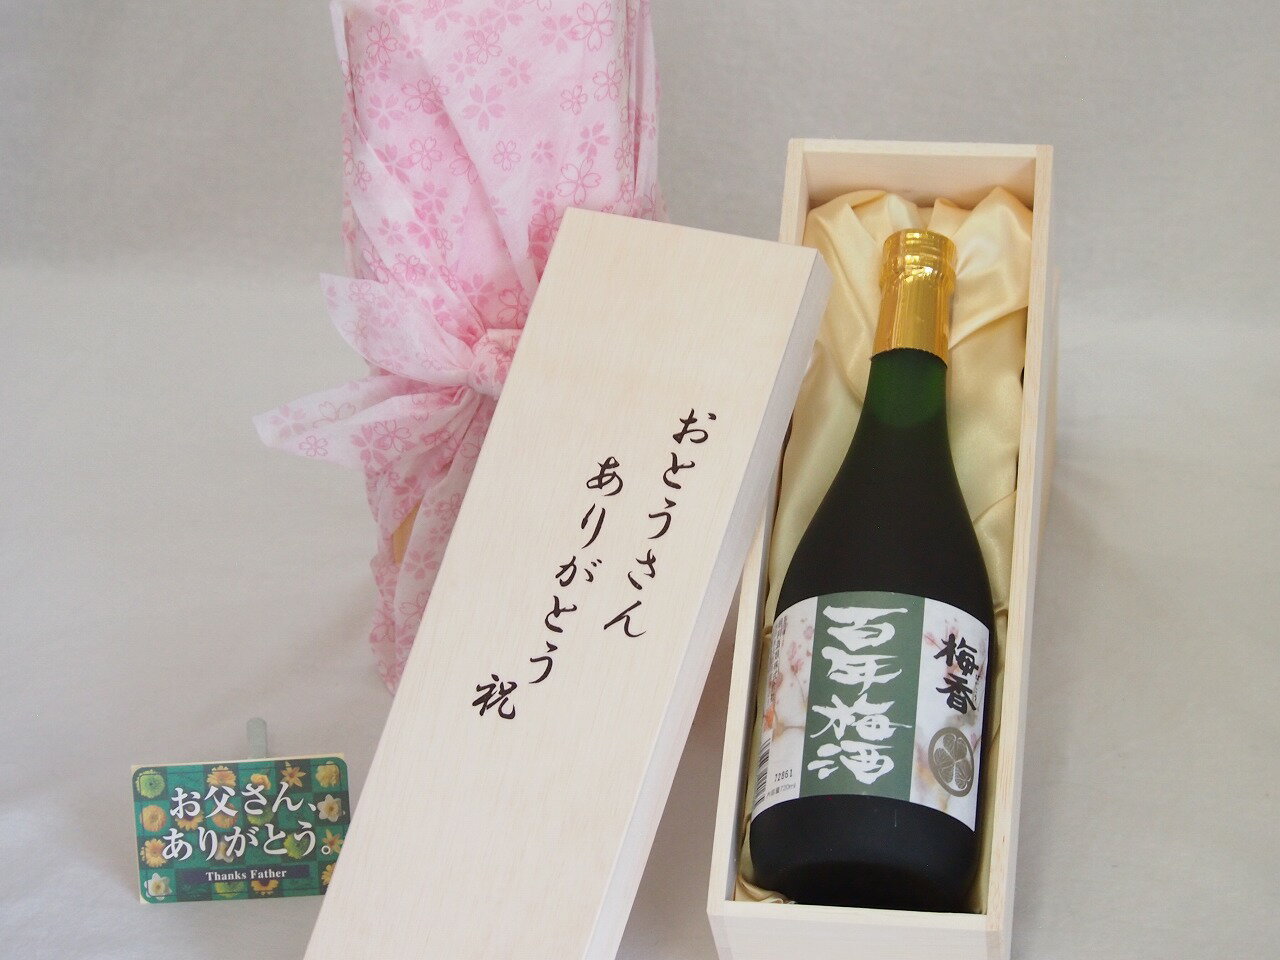 父の日 おとうさんありがとう木箱セット 明利酒類 梅香百年梅酒 (茨城県) 720ml 父の日カード付